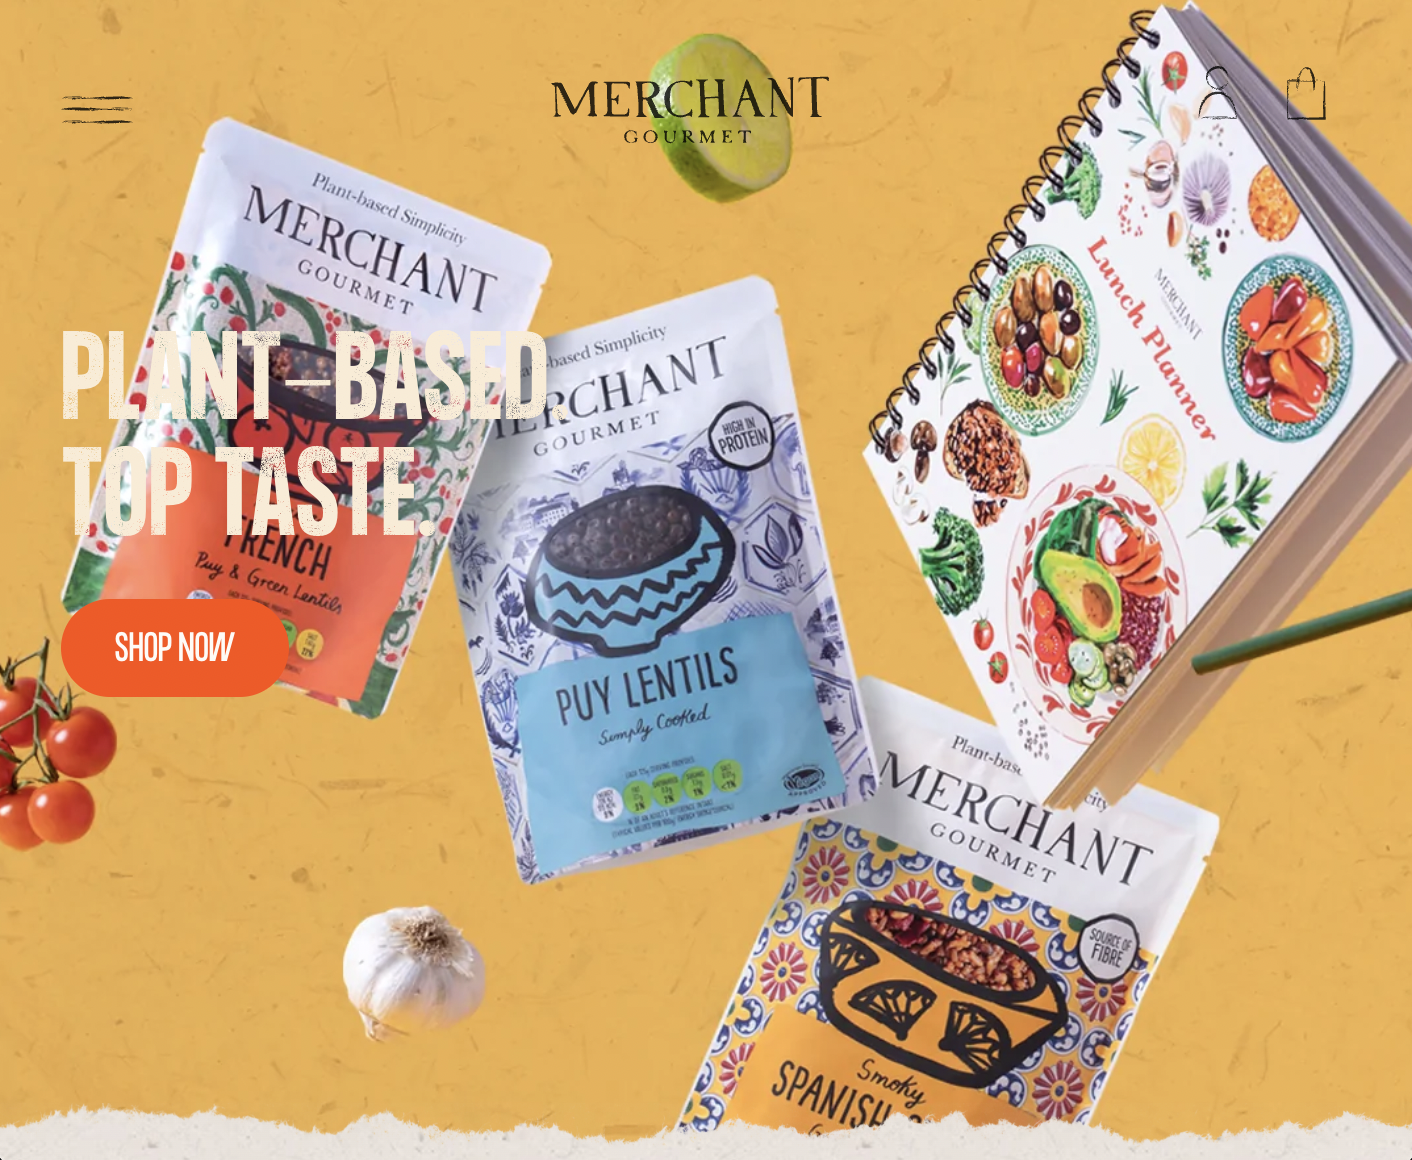 Screenshot from the Merchant Gourmet website